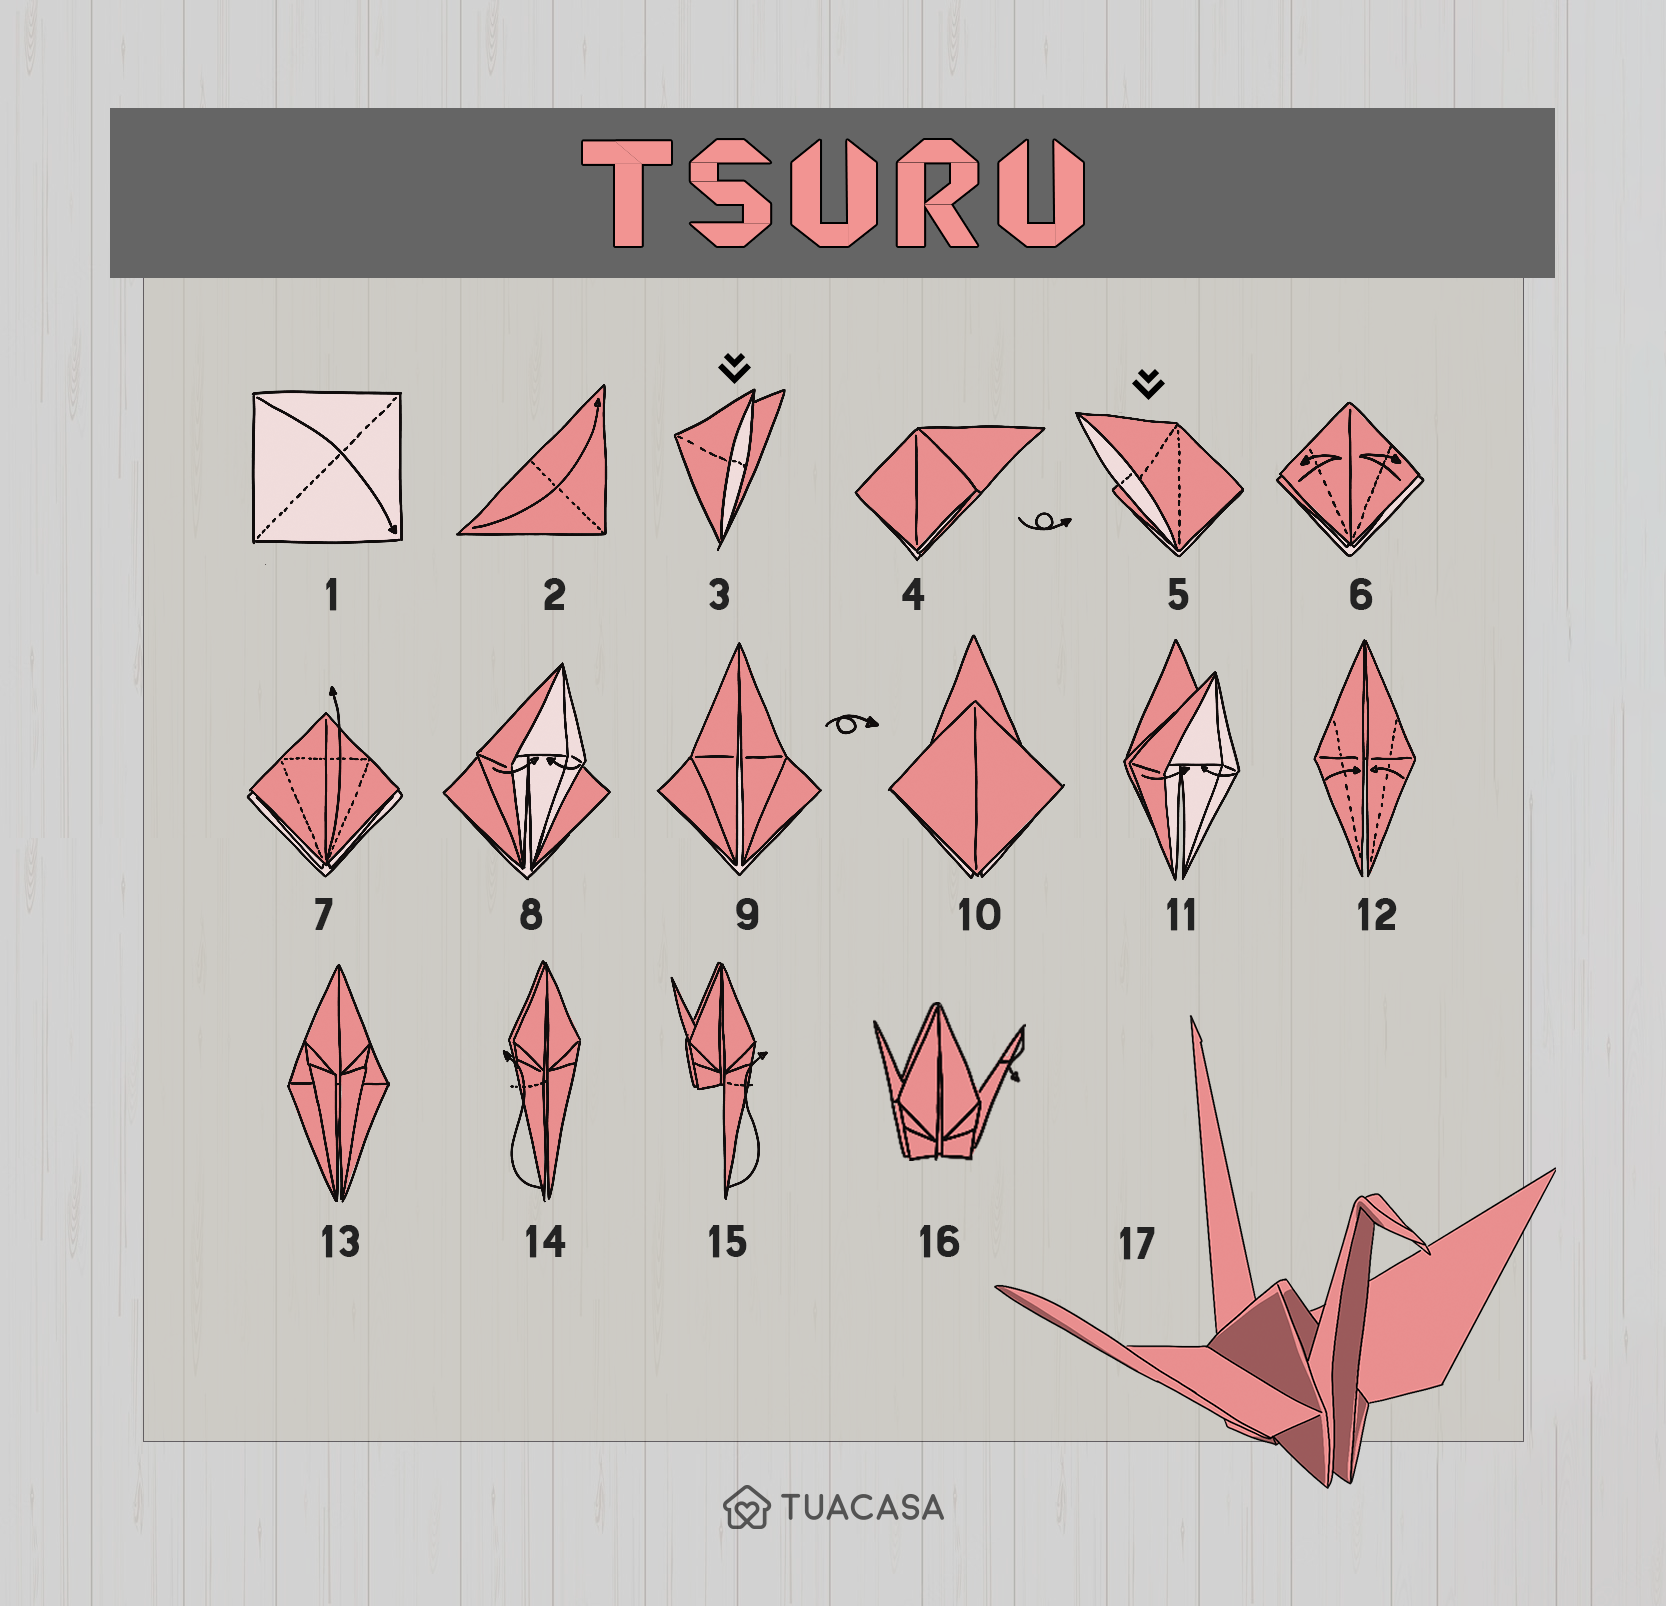 Tsuru o que é, como fazer o origami e 3 tutoriais